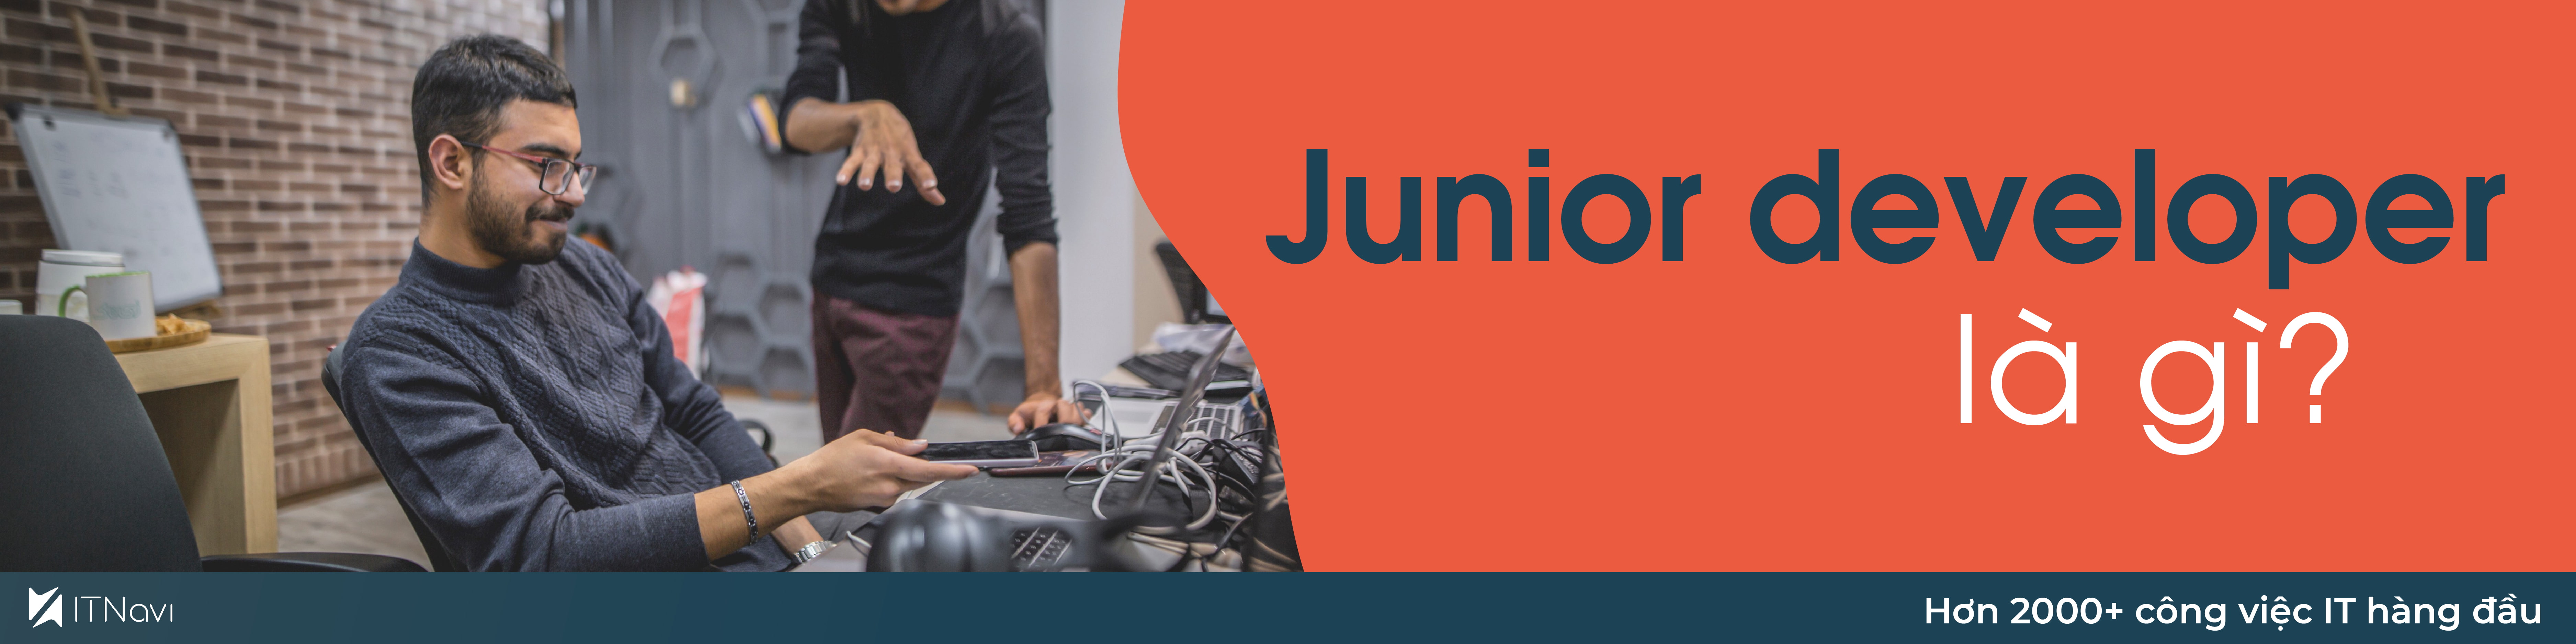 Cần chuẩn bị những gì để trở thành Junior Developer chuyên nghiệp?